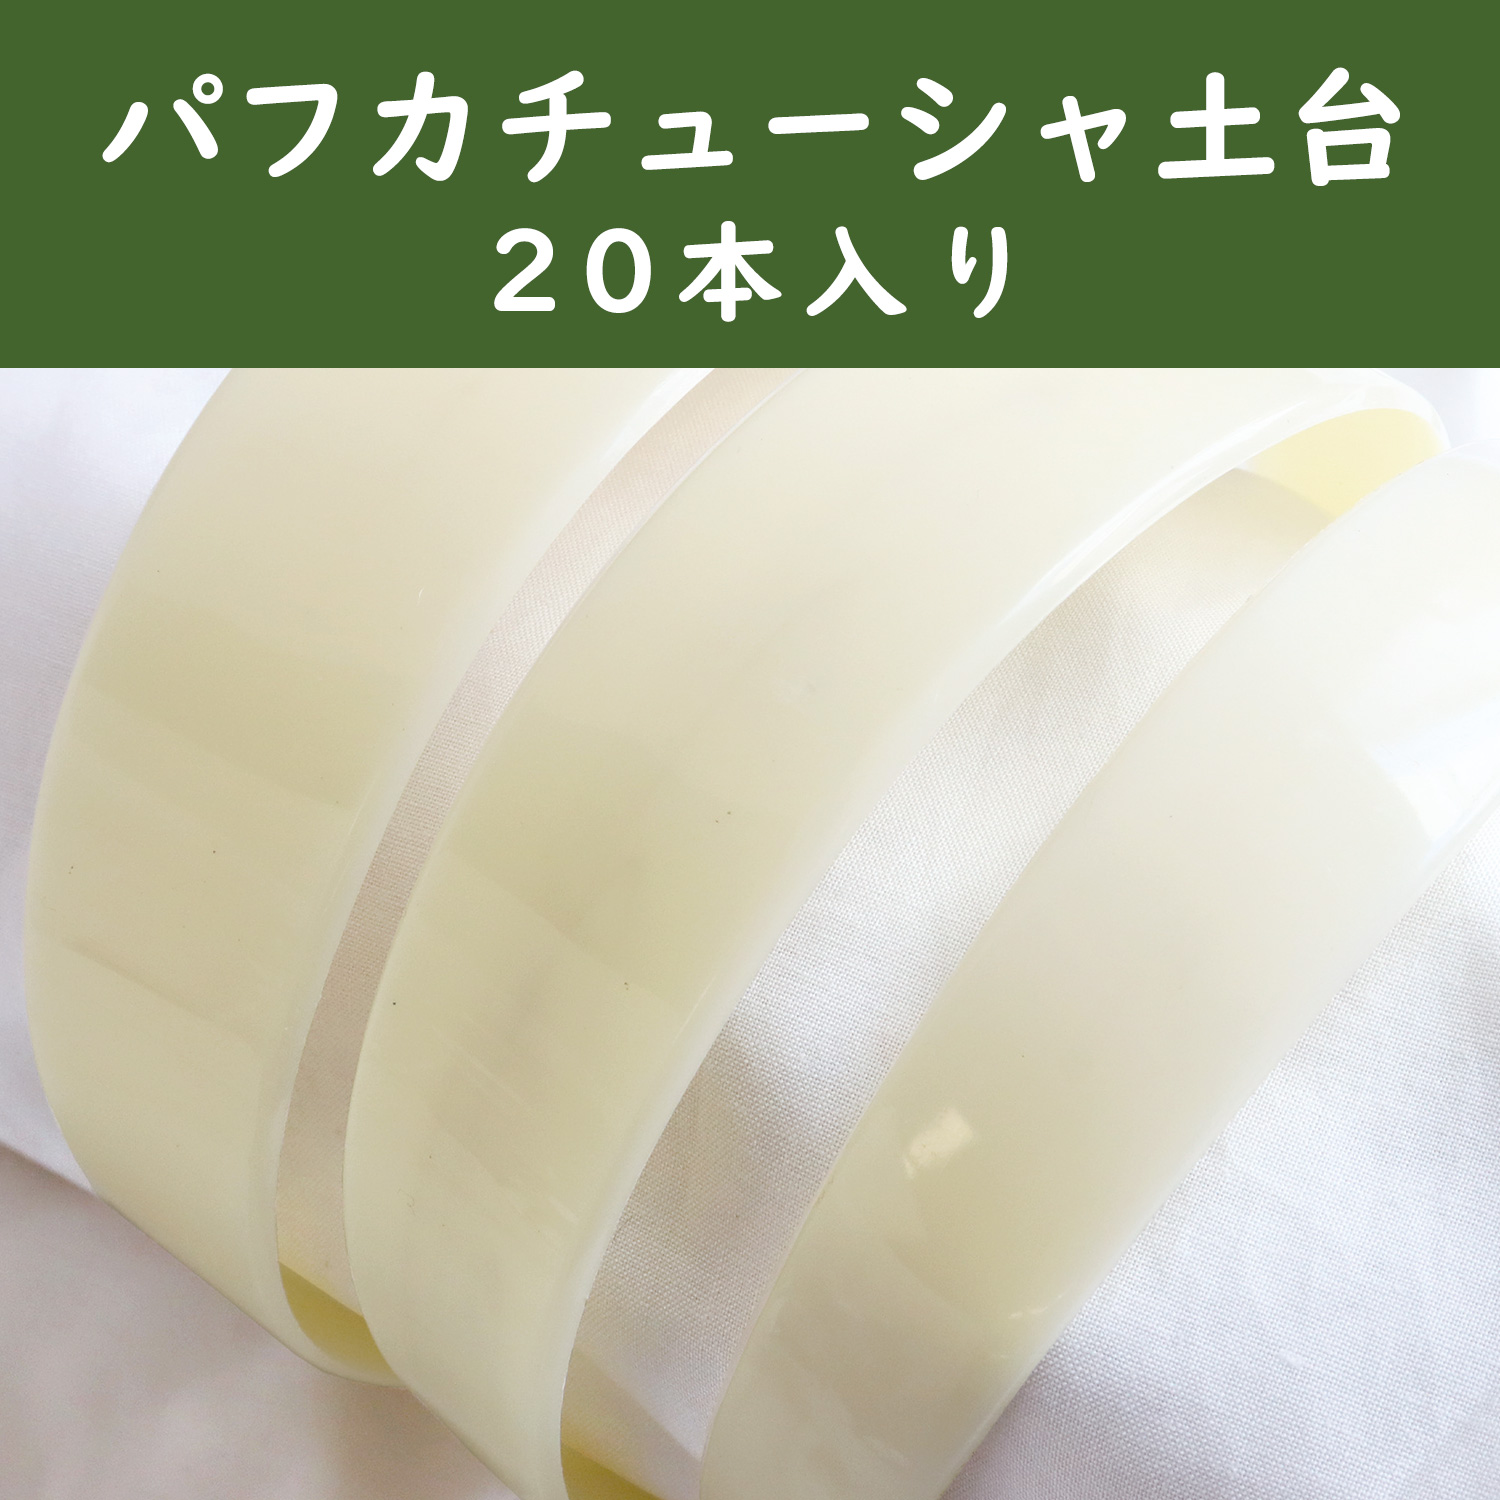 【徳用】A5-118〜120 カチューシャ芯 白 20本入 (袋)